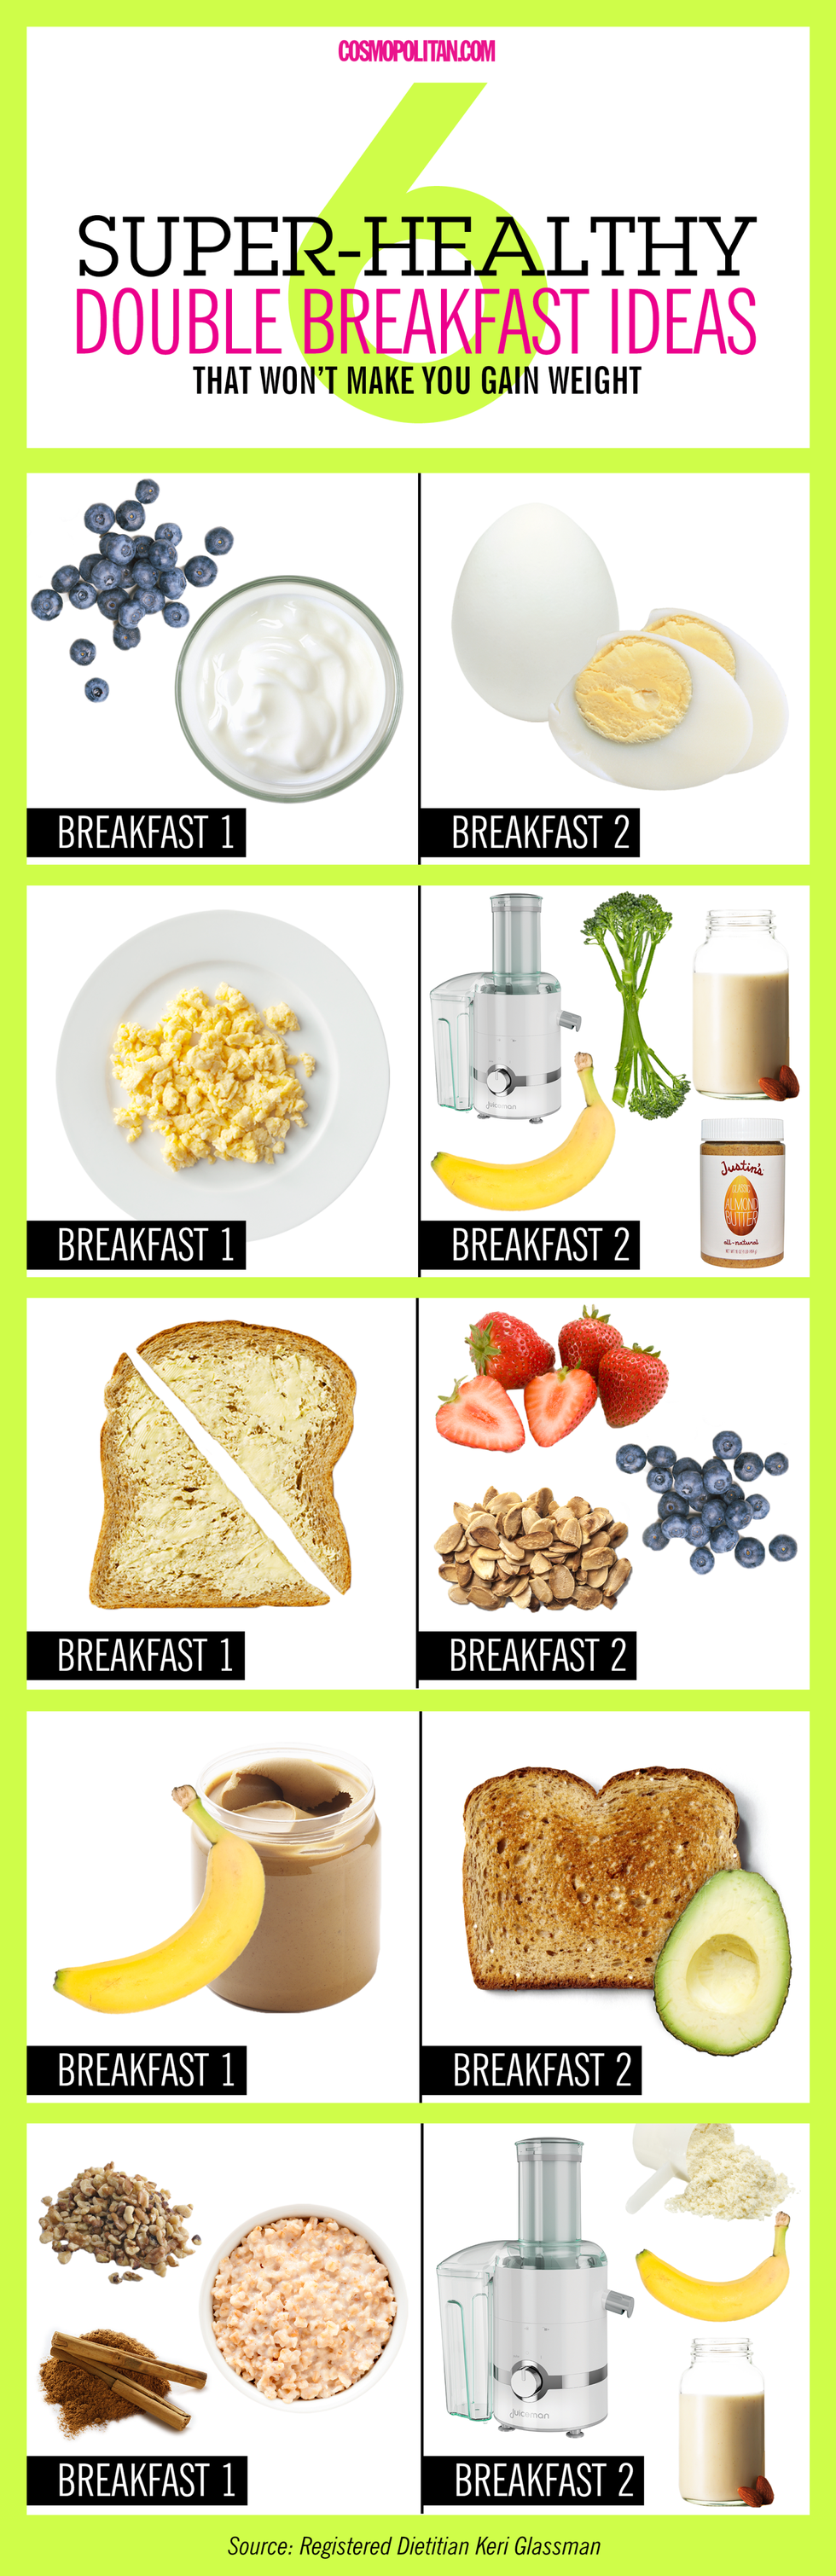 Ingredient, Food, Cuisine, Recipe, Breakfast, Bread, Meal, Dish, Produce, Gluten, 